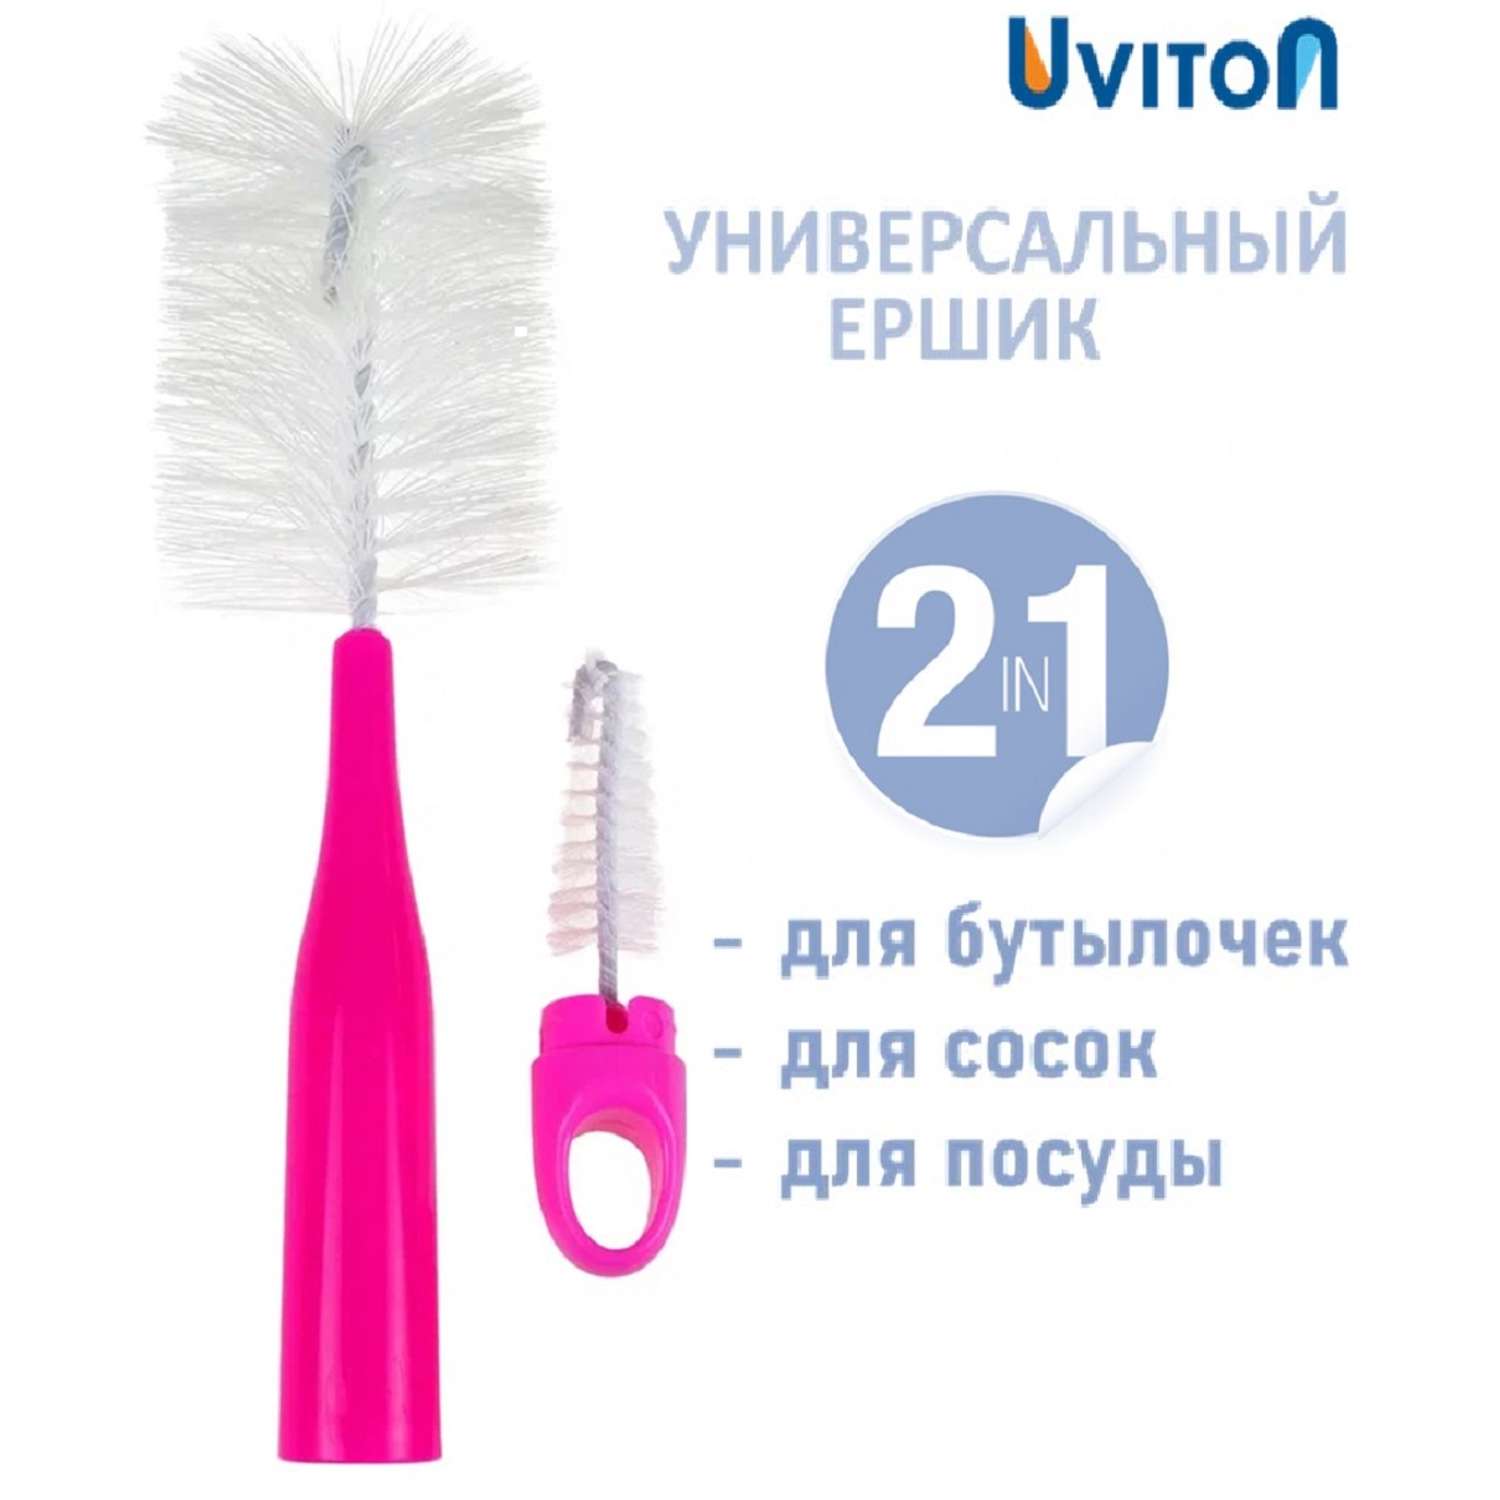 Ершик Uviton для мытья бутылочек Lux 0145 розовый - фото 1